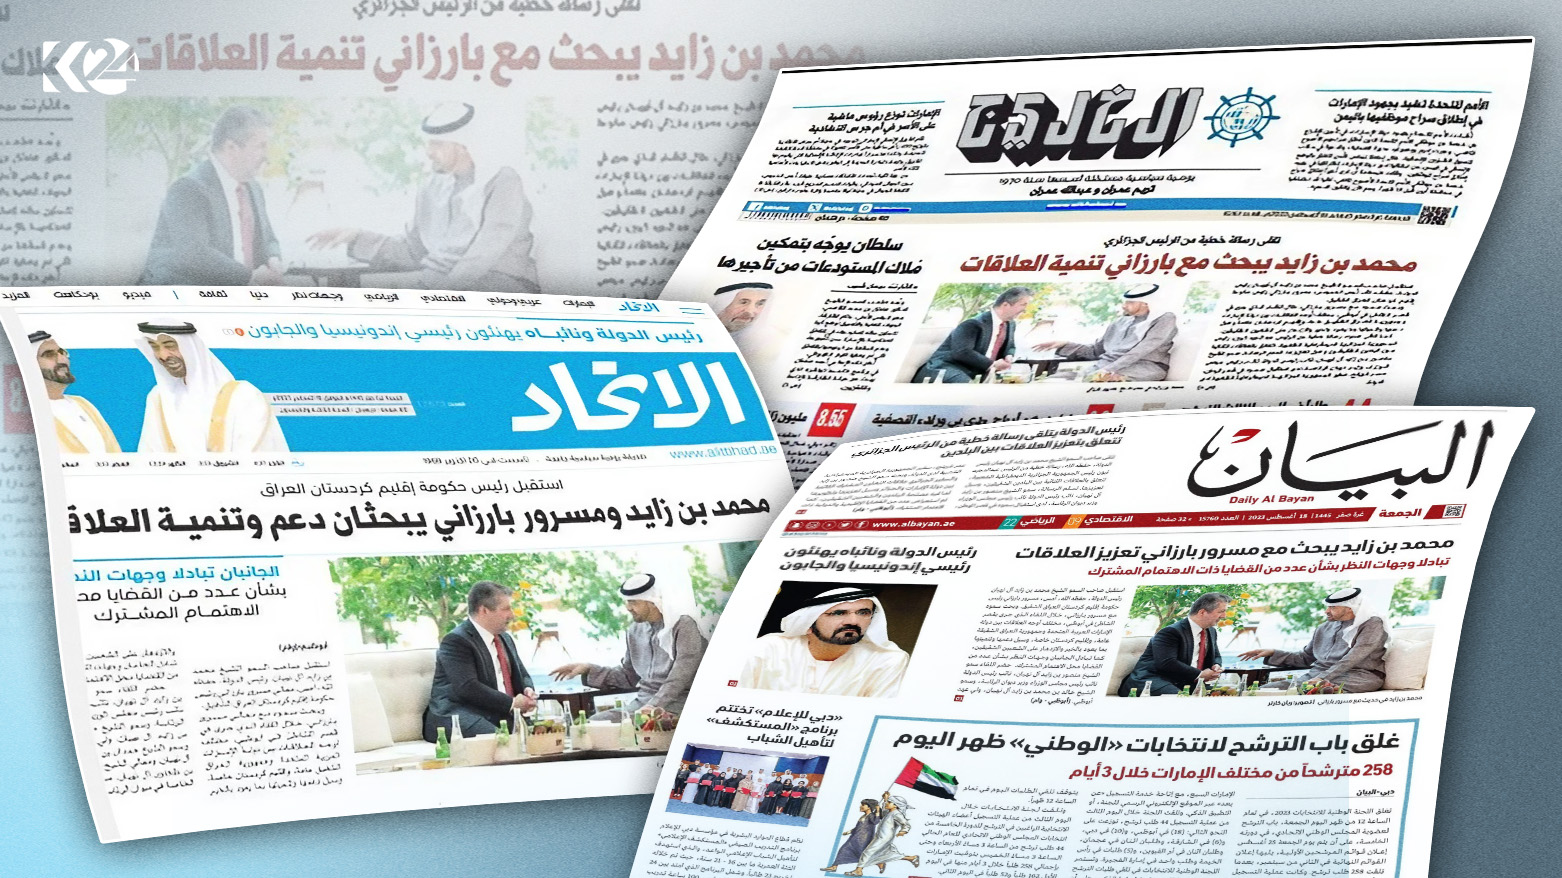 BAE basını Başbakan Mesrur Barzani’nin ziyaretini manşete taşıdı